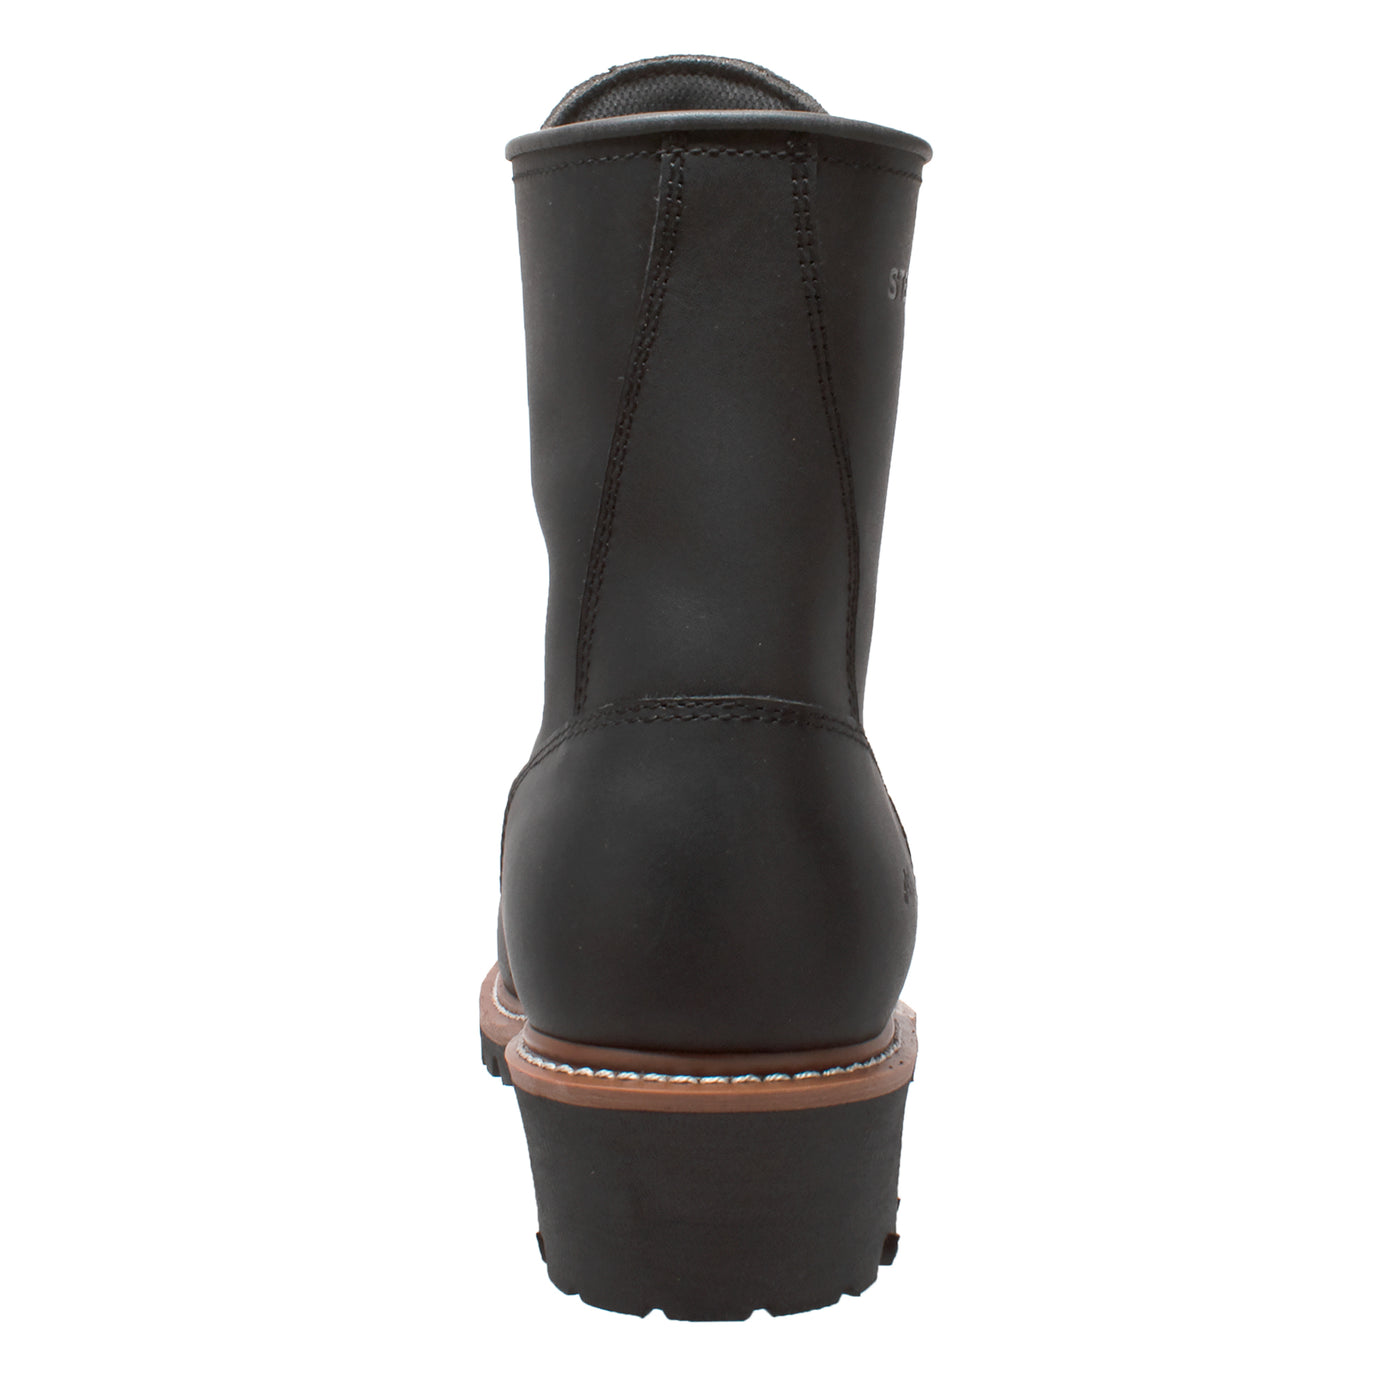 Men's 9" Waterproof Logger Black - 1439WP - Shop Genuine Leather men & women's boots online | AdTecFootWear